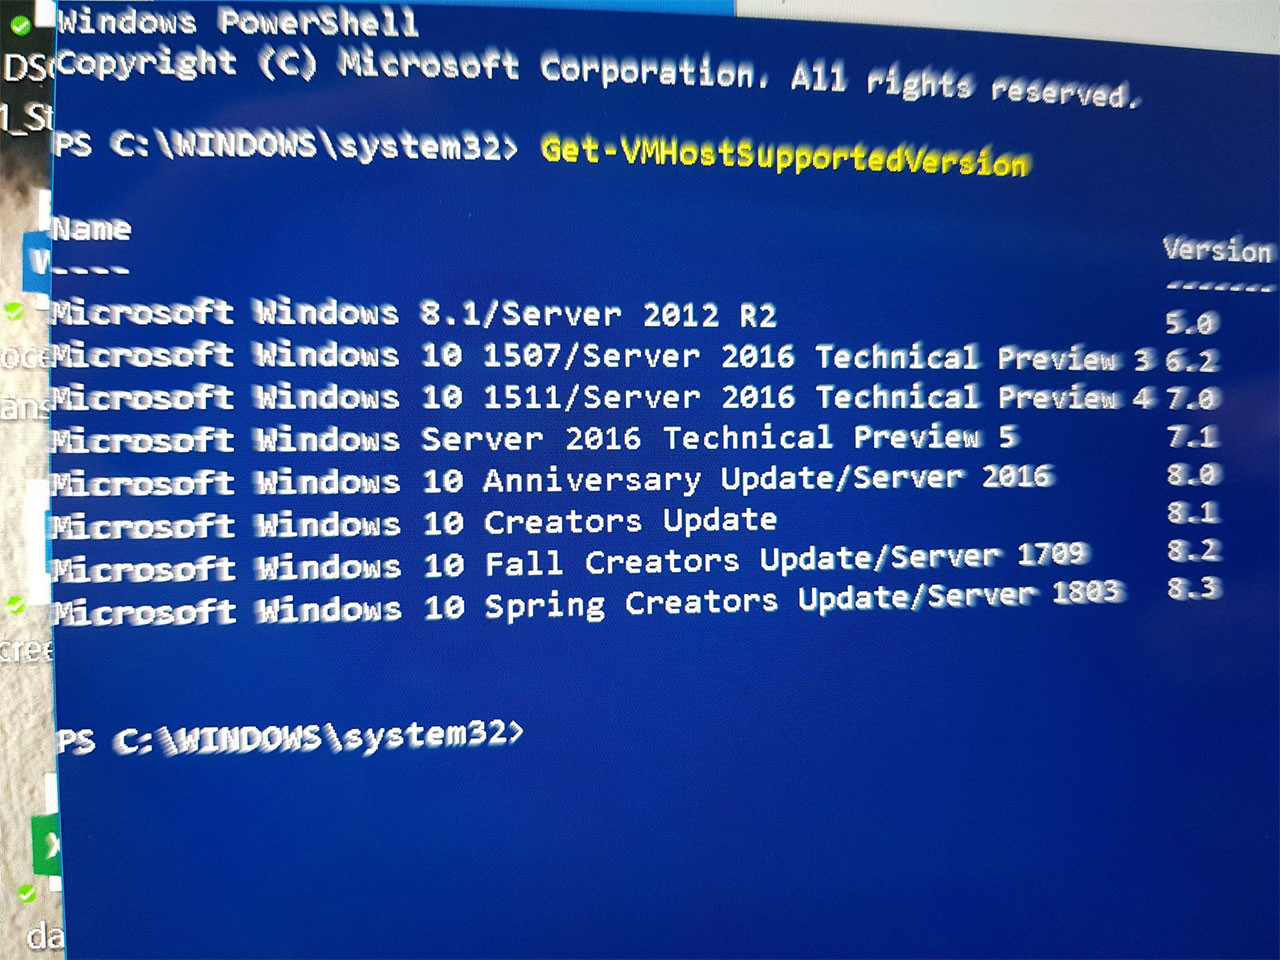 Обновление Windows 10 Spring Creators Update (Redstone 4) принесет новую платформу ИИ и режим S Mode